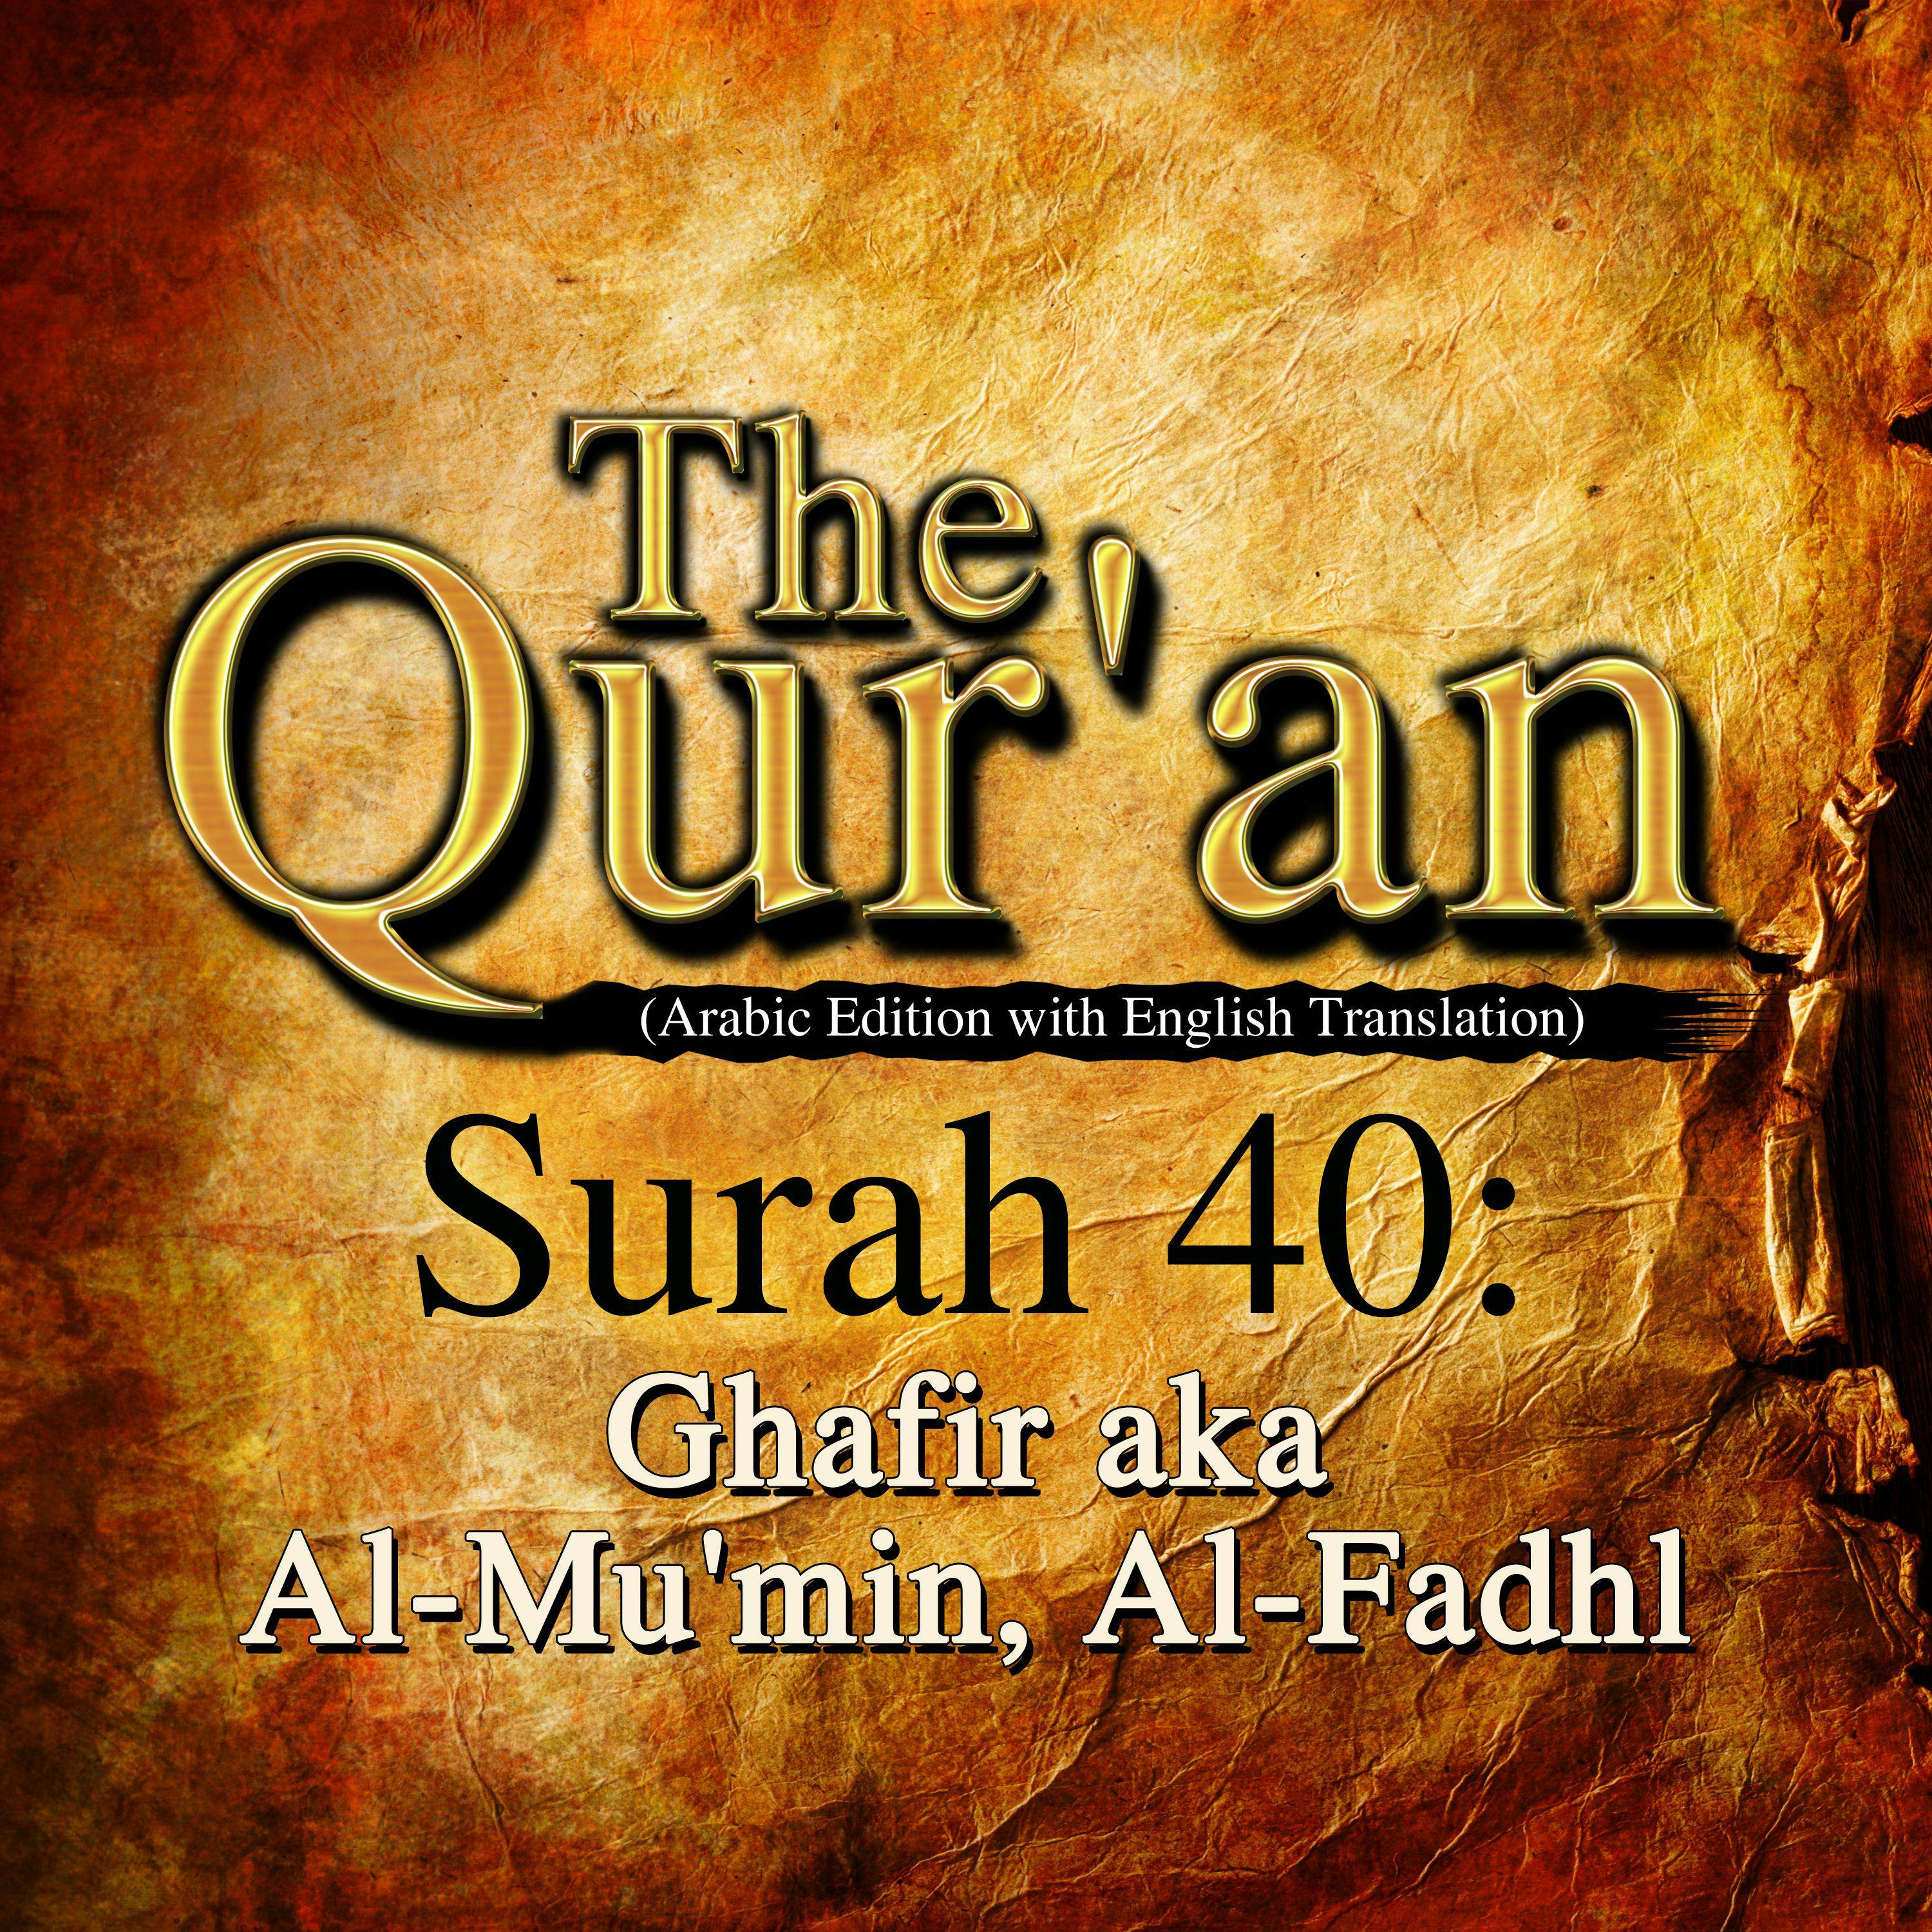 The Qur'an: Surah 40: Ghafir aka Al-Mu'min, Al-Fadhl - One Media iP LTD